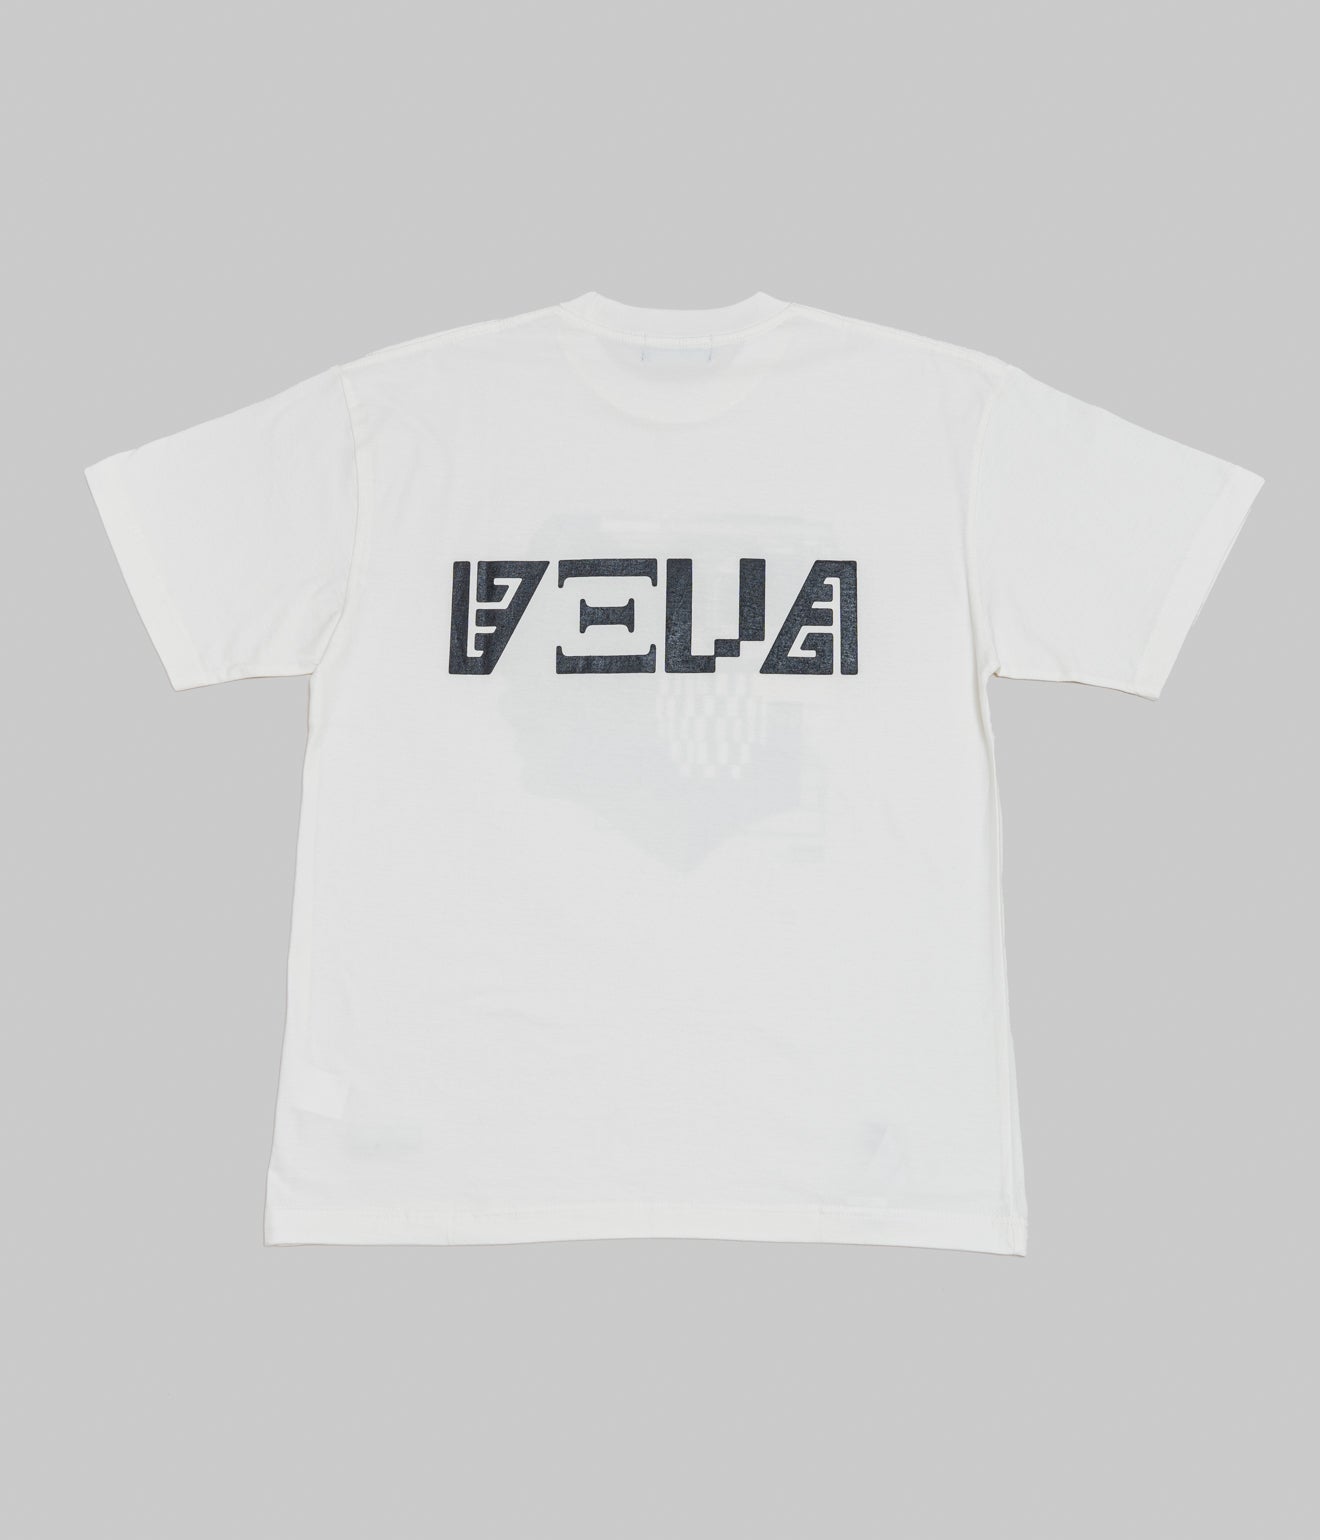 DEVÁ STATES "DOUBT T-Shirt" Off White - WEAREALLANIMALS